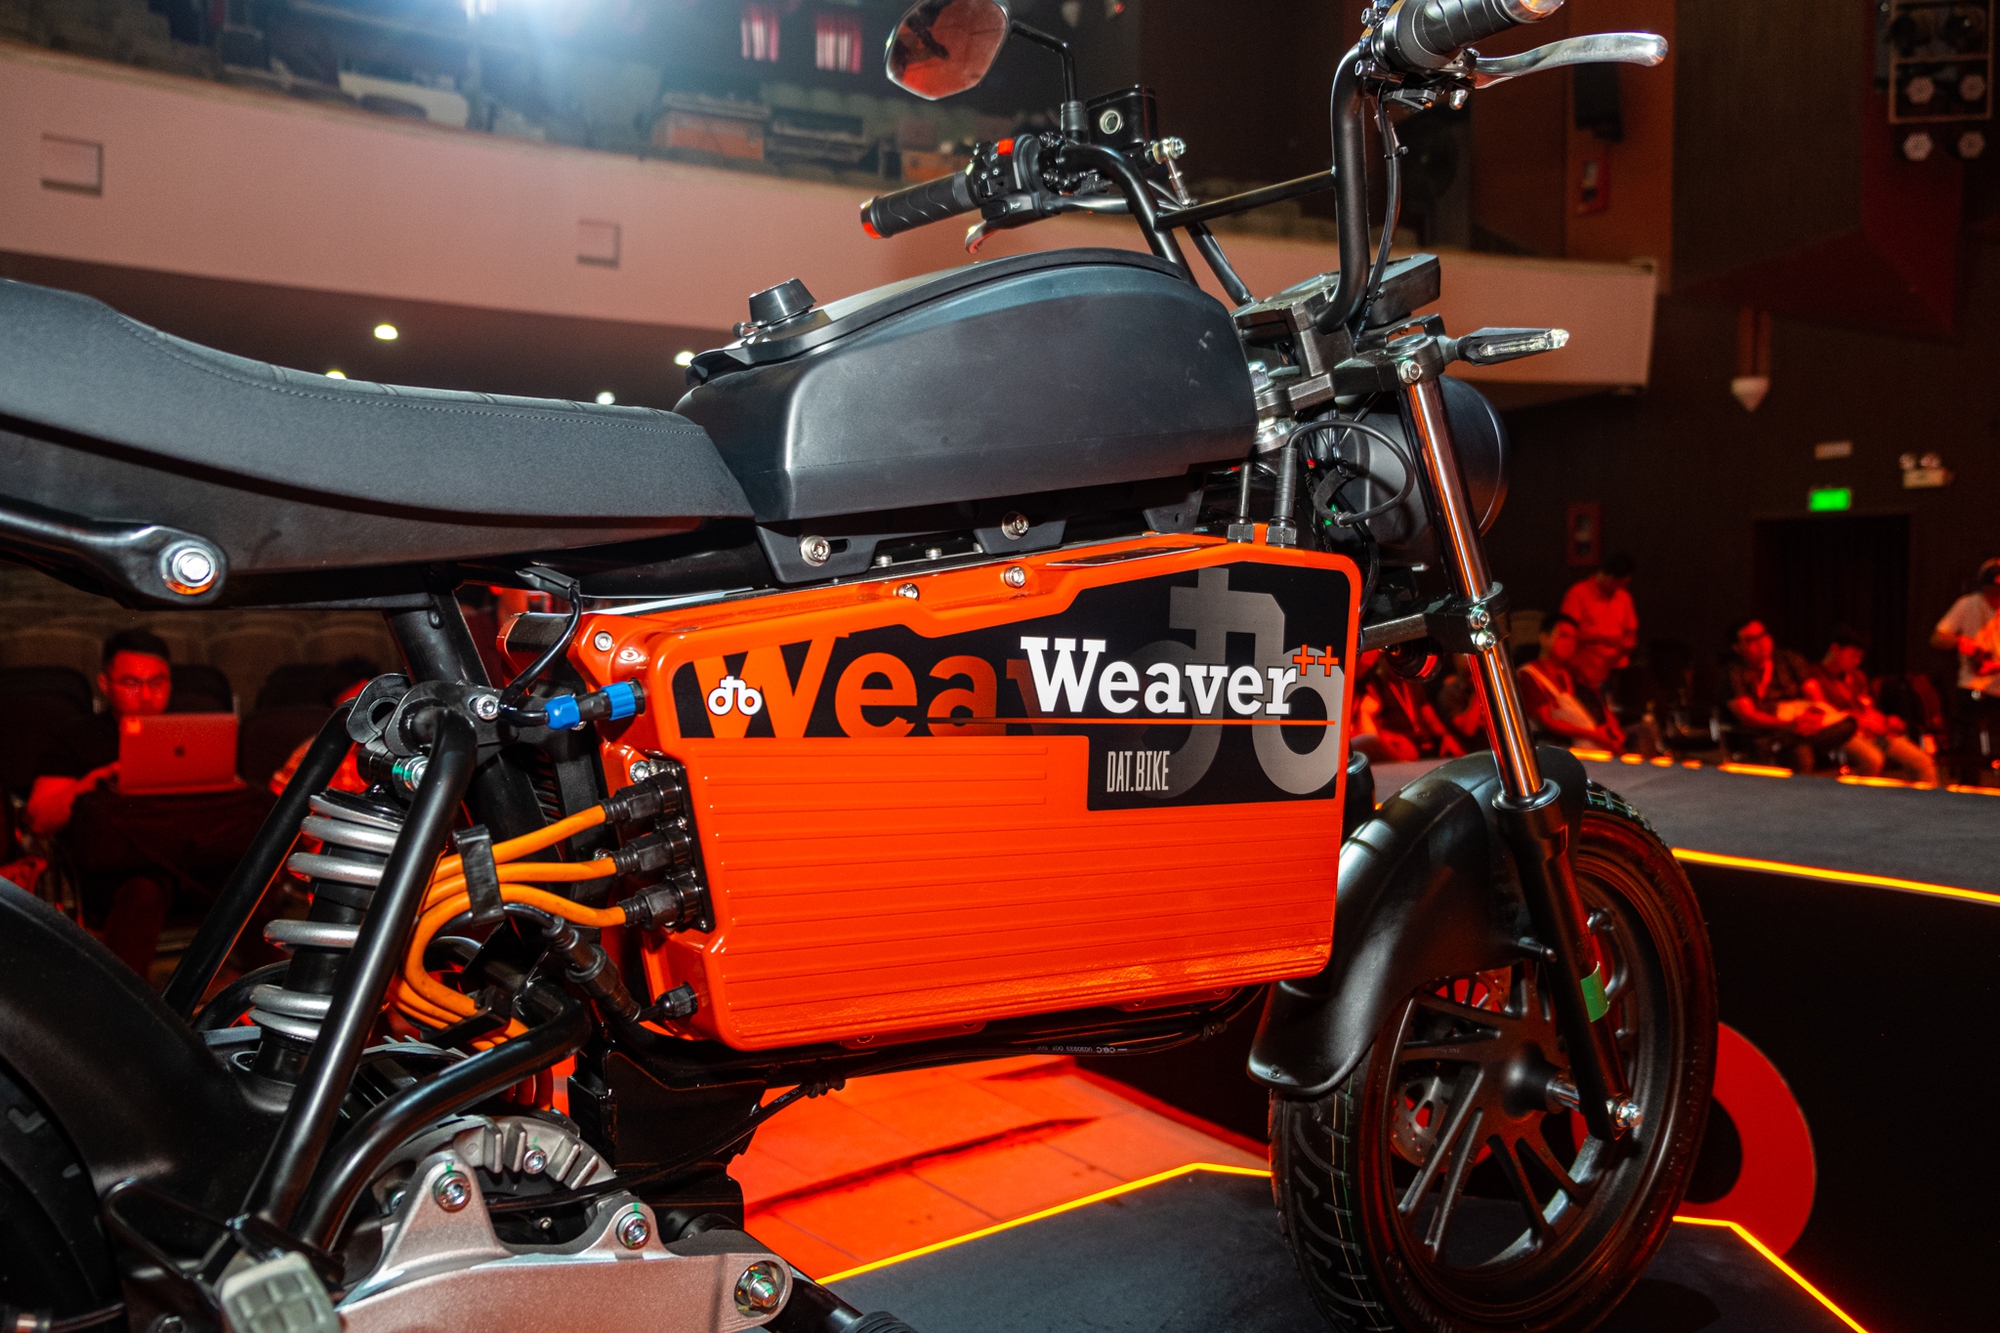 Ra mắt Dat Bike Weaver++: Giá 65,9 triệu đồng, dáng cổ điển, sạc nhanh chưa từng có tại Việt Nam - Ảnh 3.